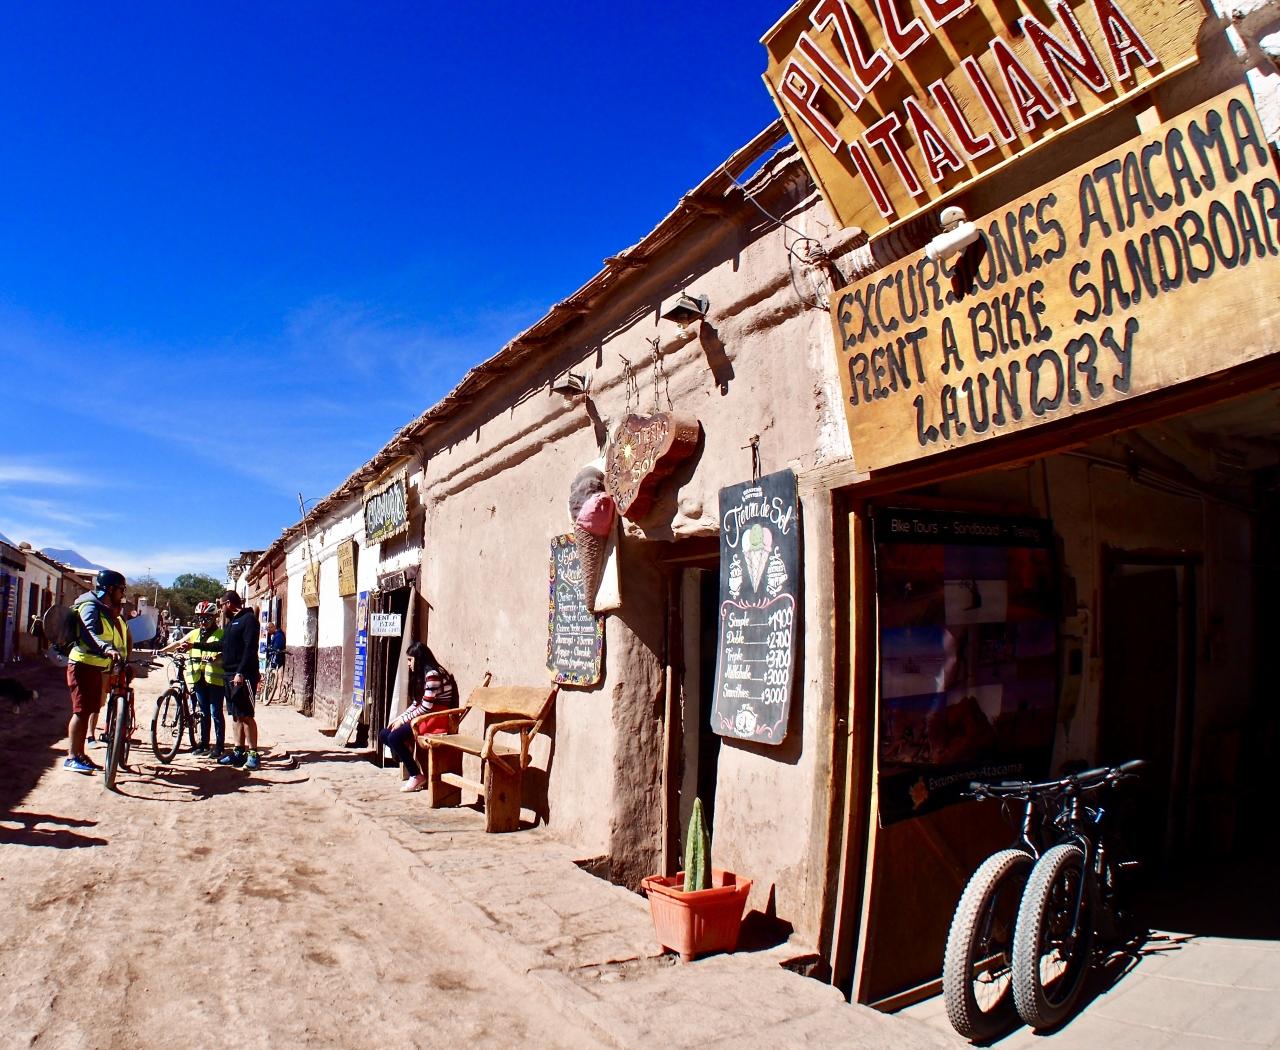 アンデス山脈を越えて 世界最高峰4000m超 天空の砂漠 アタカマ砂漠 で美しい光景と 薄い空気に くらくらでへろへろになる旅 8 サンペドロ デ アタカマ San Pedro De Atacama チリ サン ペドロ デ アタカマ チリ の旅行記 ブログ By コタ Kota １号